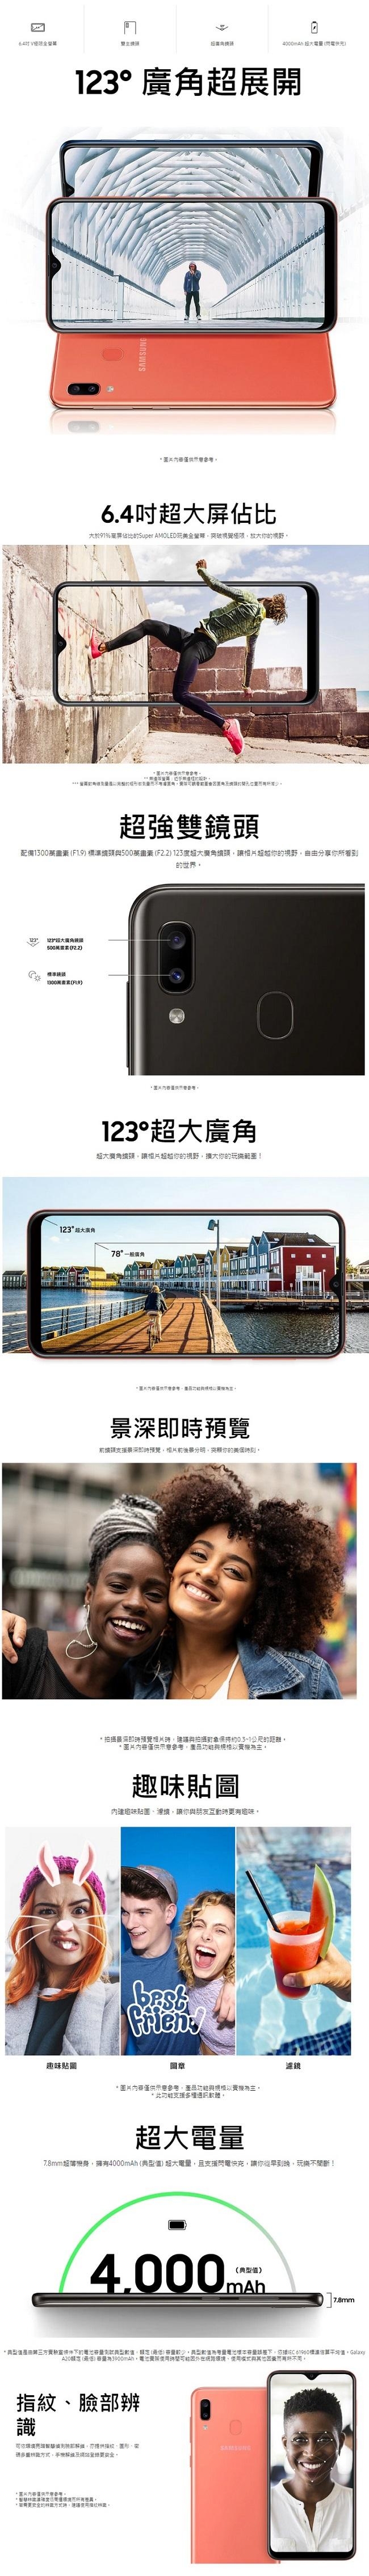 Samsung Galaxy A20 (3G/32G) 6.4吋智慧型手機